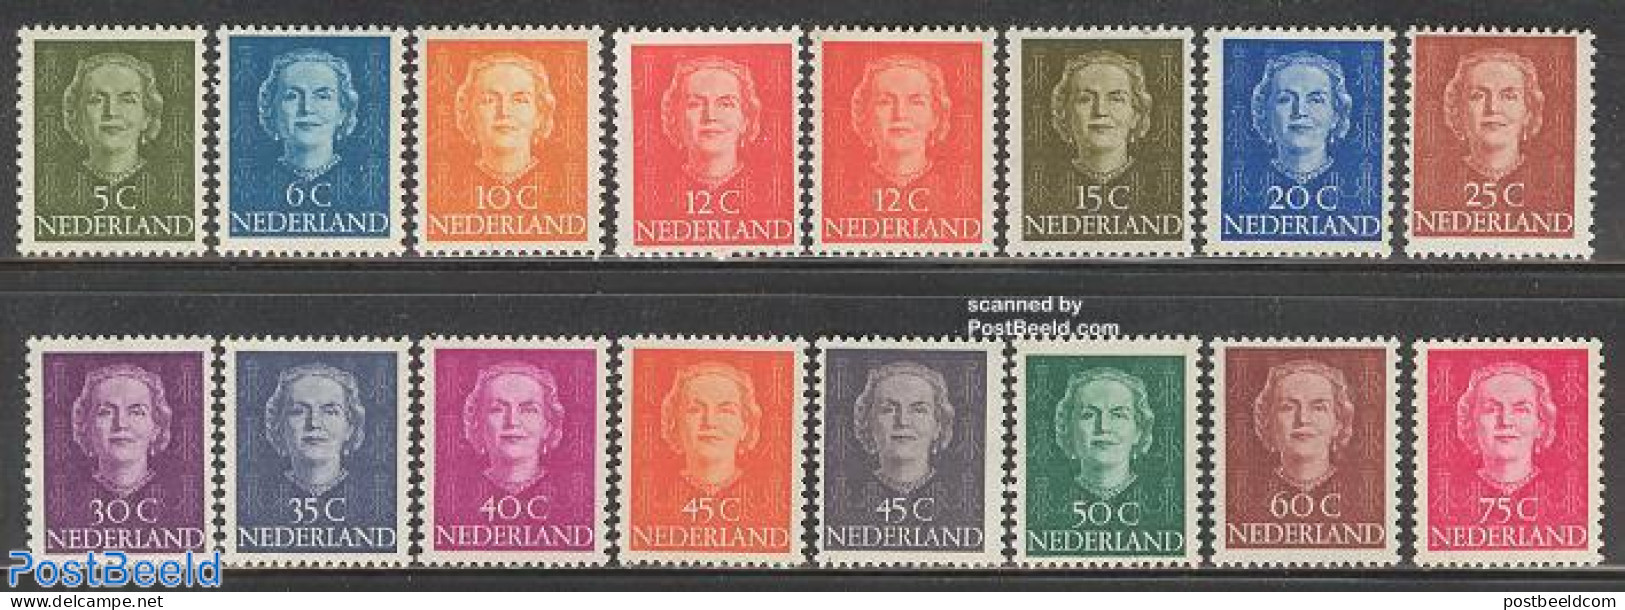 Netherlands 1949 Definitives 16v, Mint NH - Unused Stamps